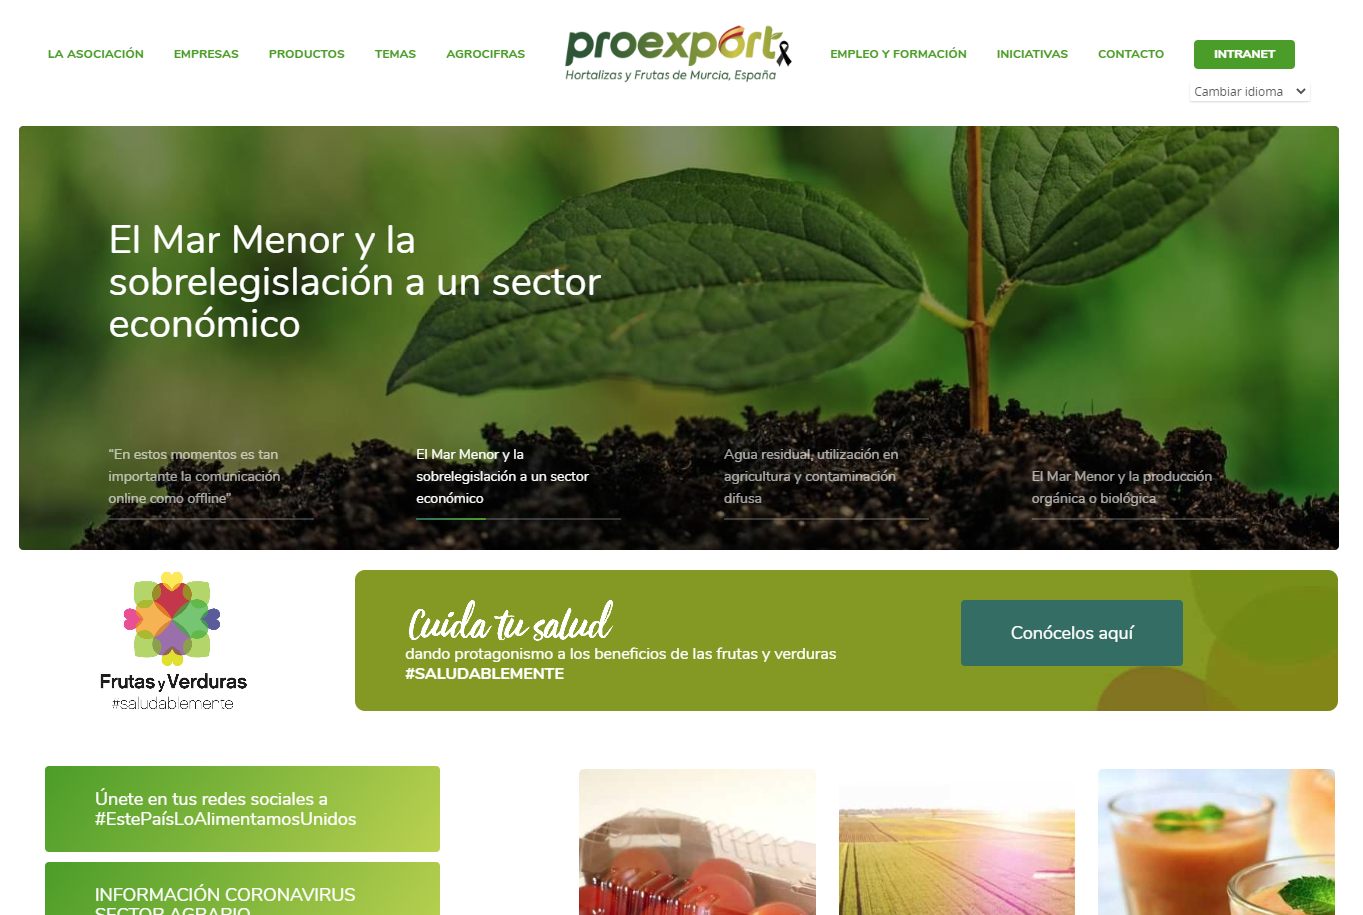 Proexport.es, finalista de los XII Premios Web Región de Murcia